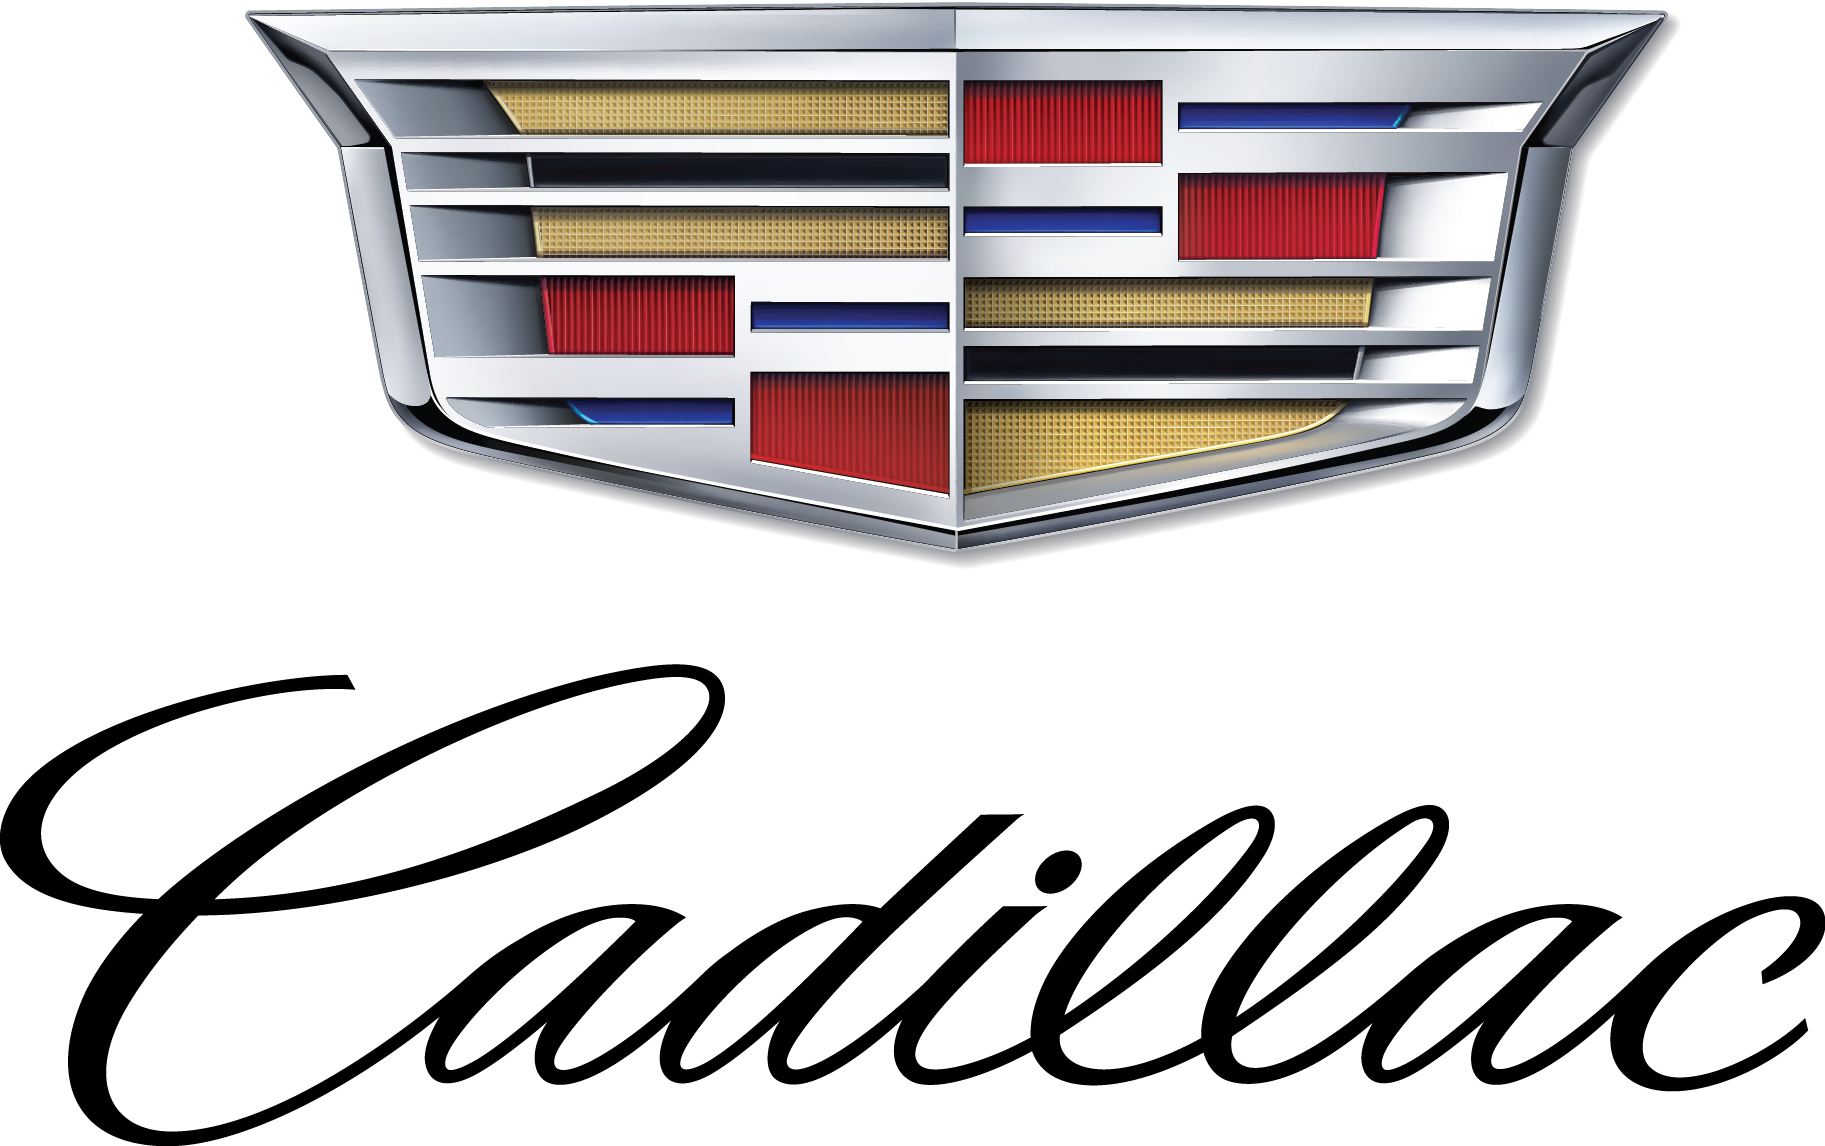 New Cadillac Logo